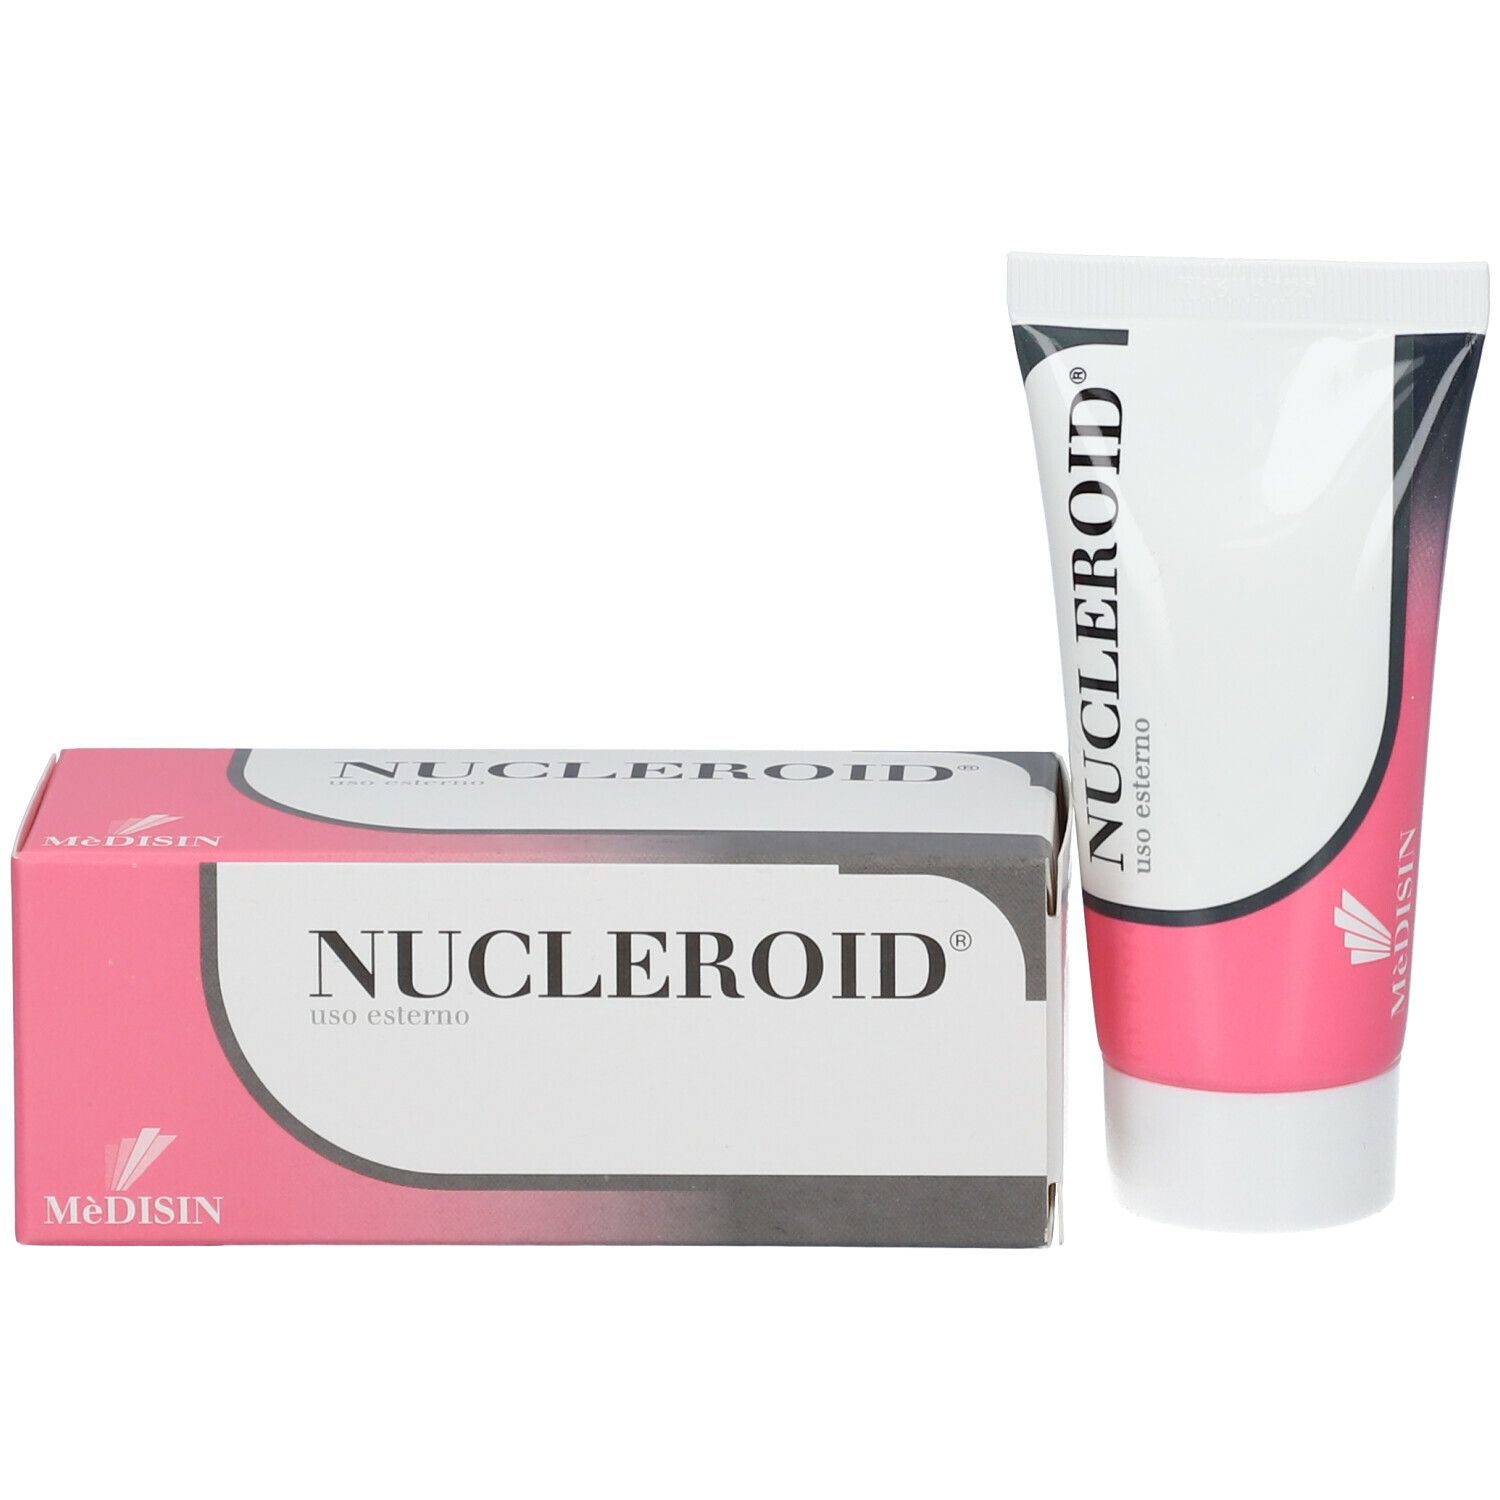 MèDISIN Nucleroid® crema 50 ml